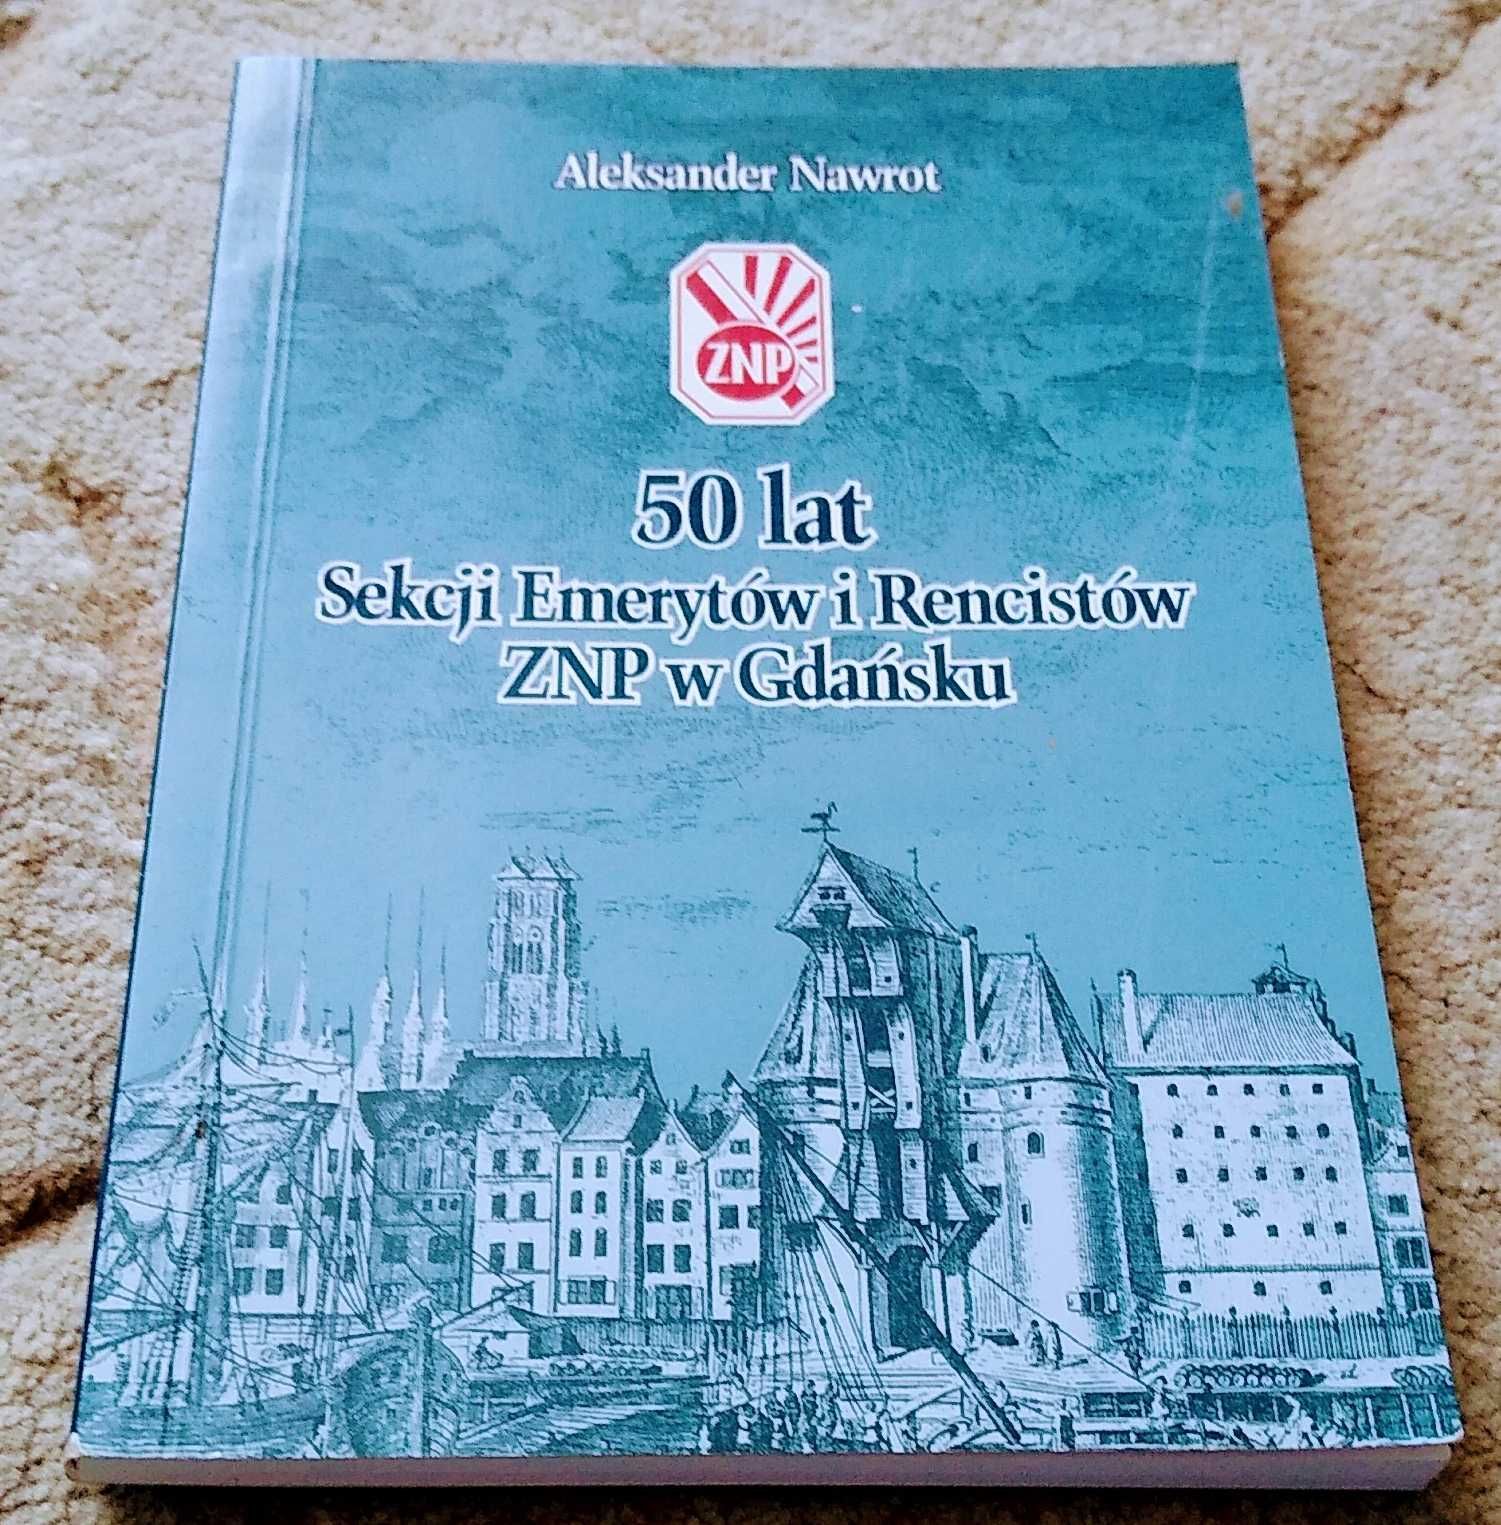 50 lat Sekcji Emerytów i Rencistów ZNP w Gdańsku Aleksander Nawrot